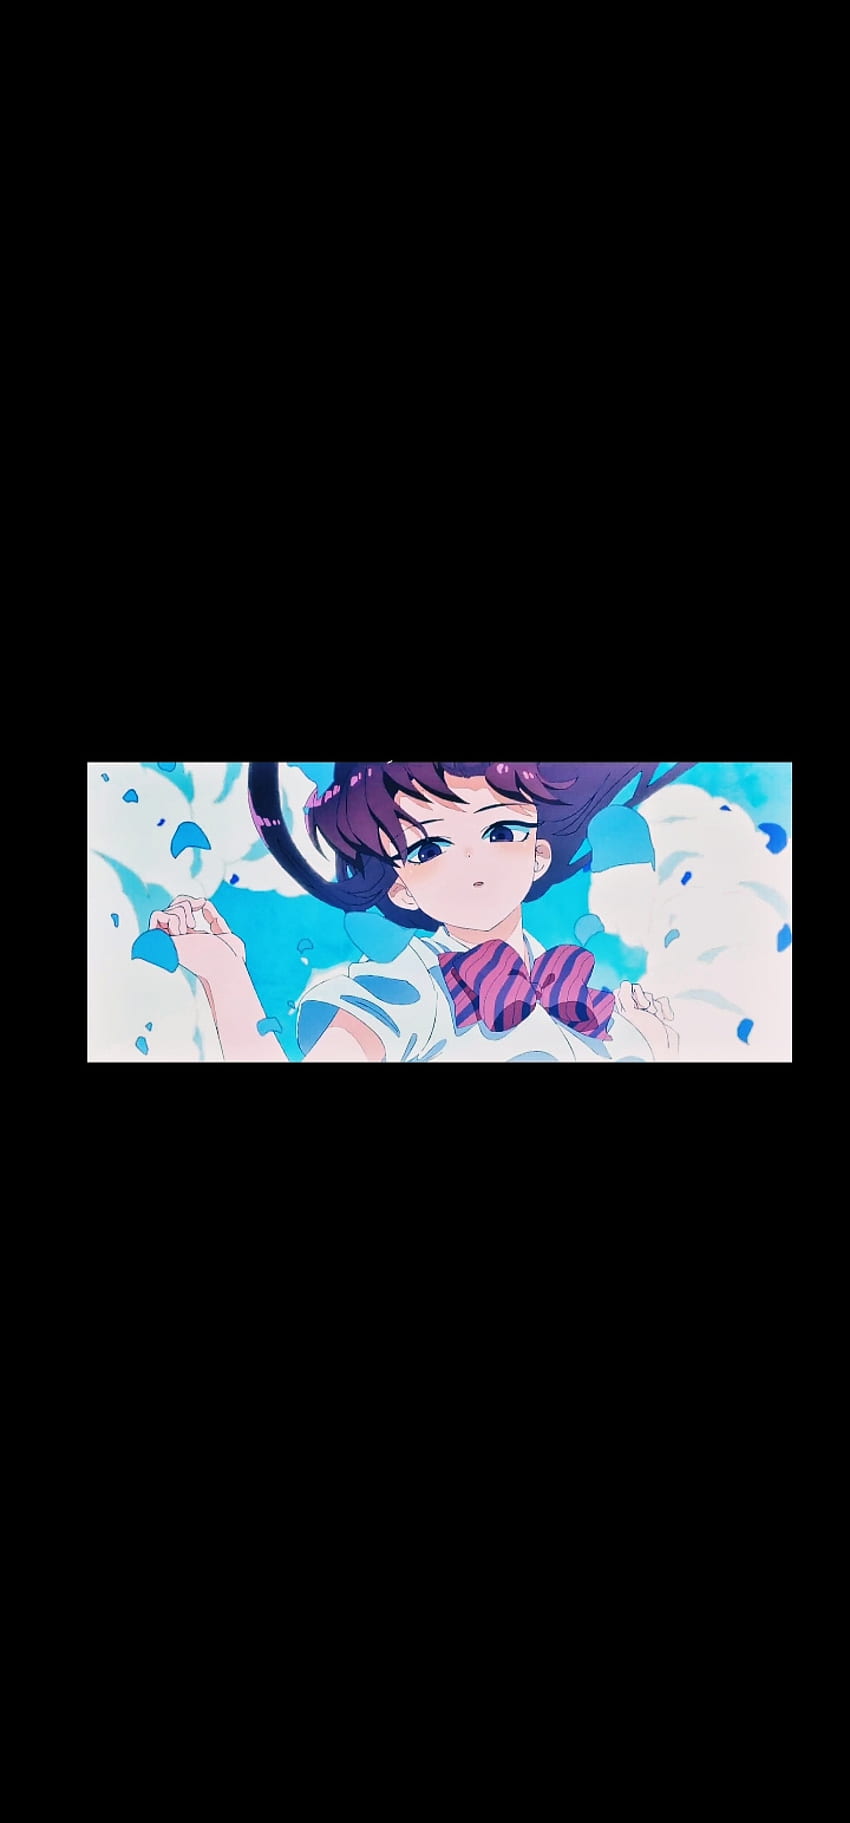 Komi no puede comunicarse, komi shouko, azul eléctrico, komi san, escena de anime fondo de pantalla del teléfono